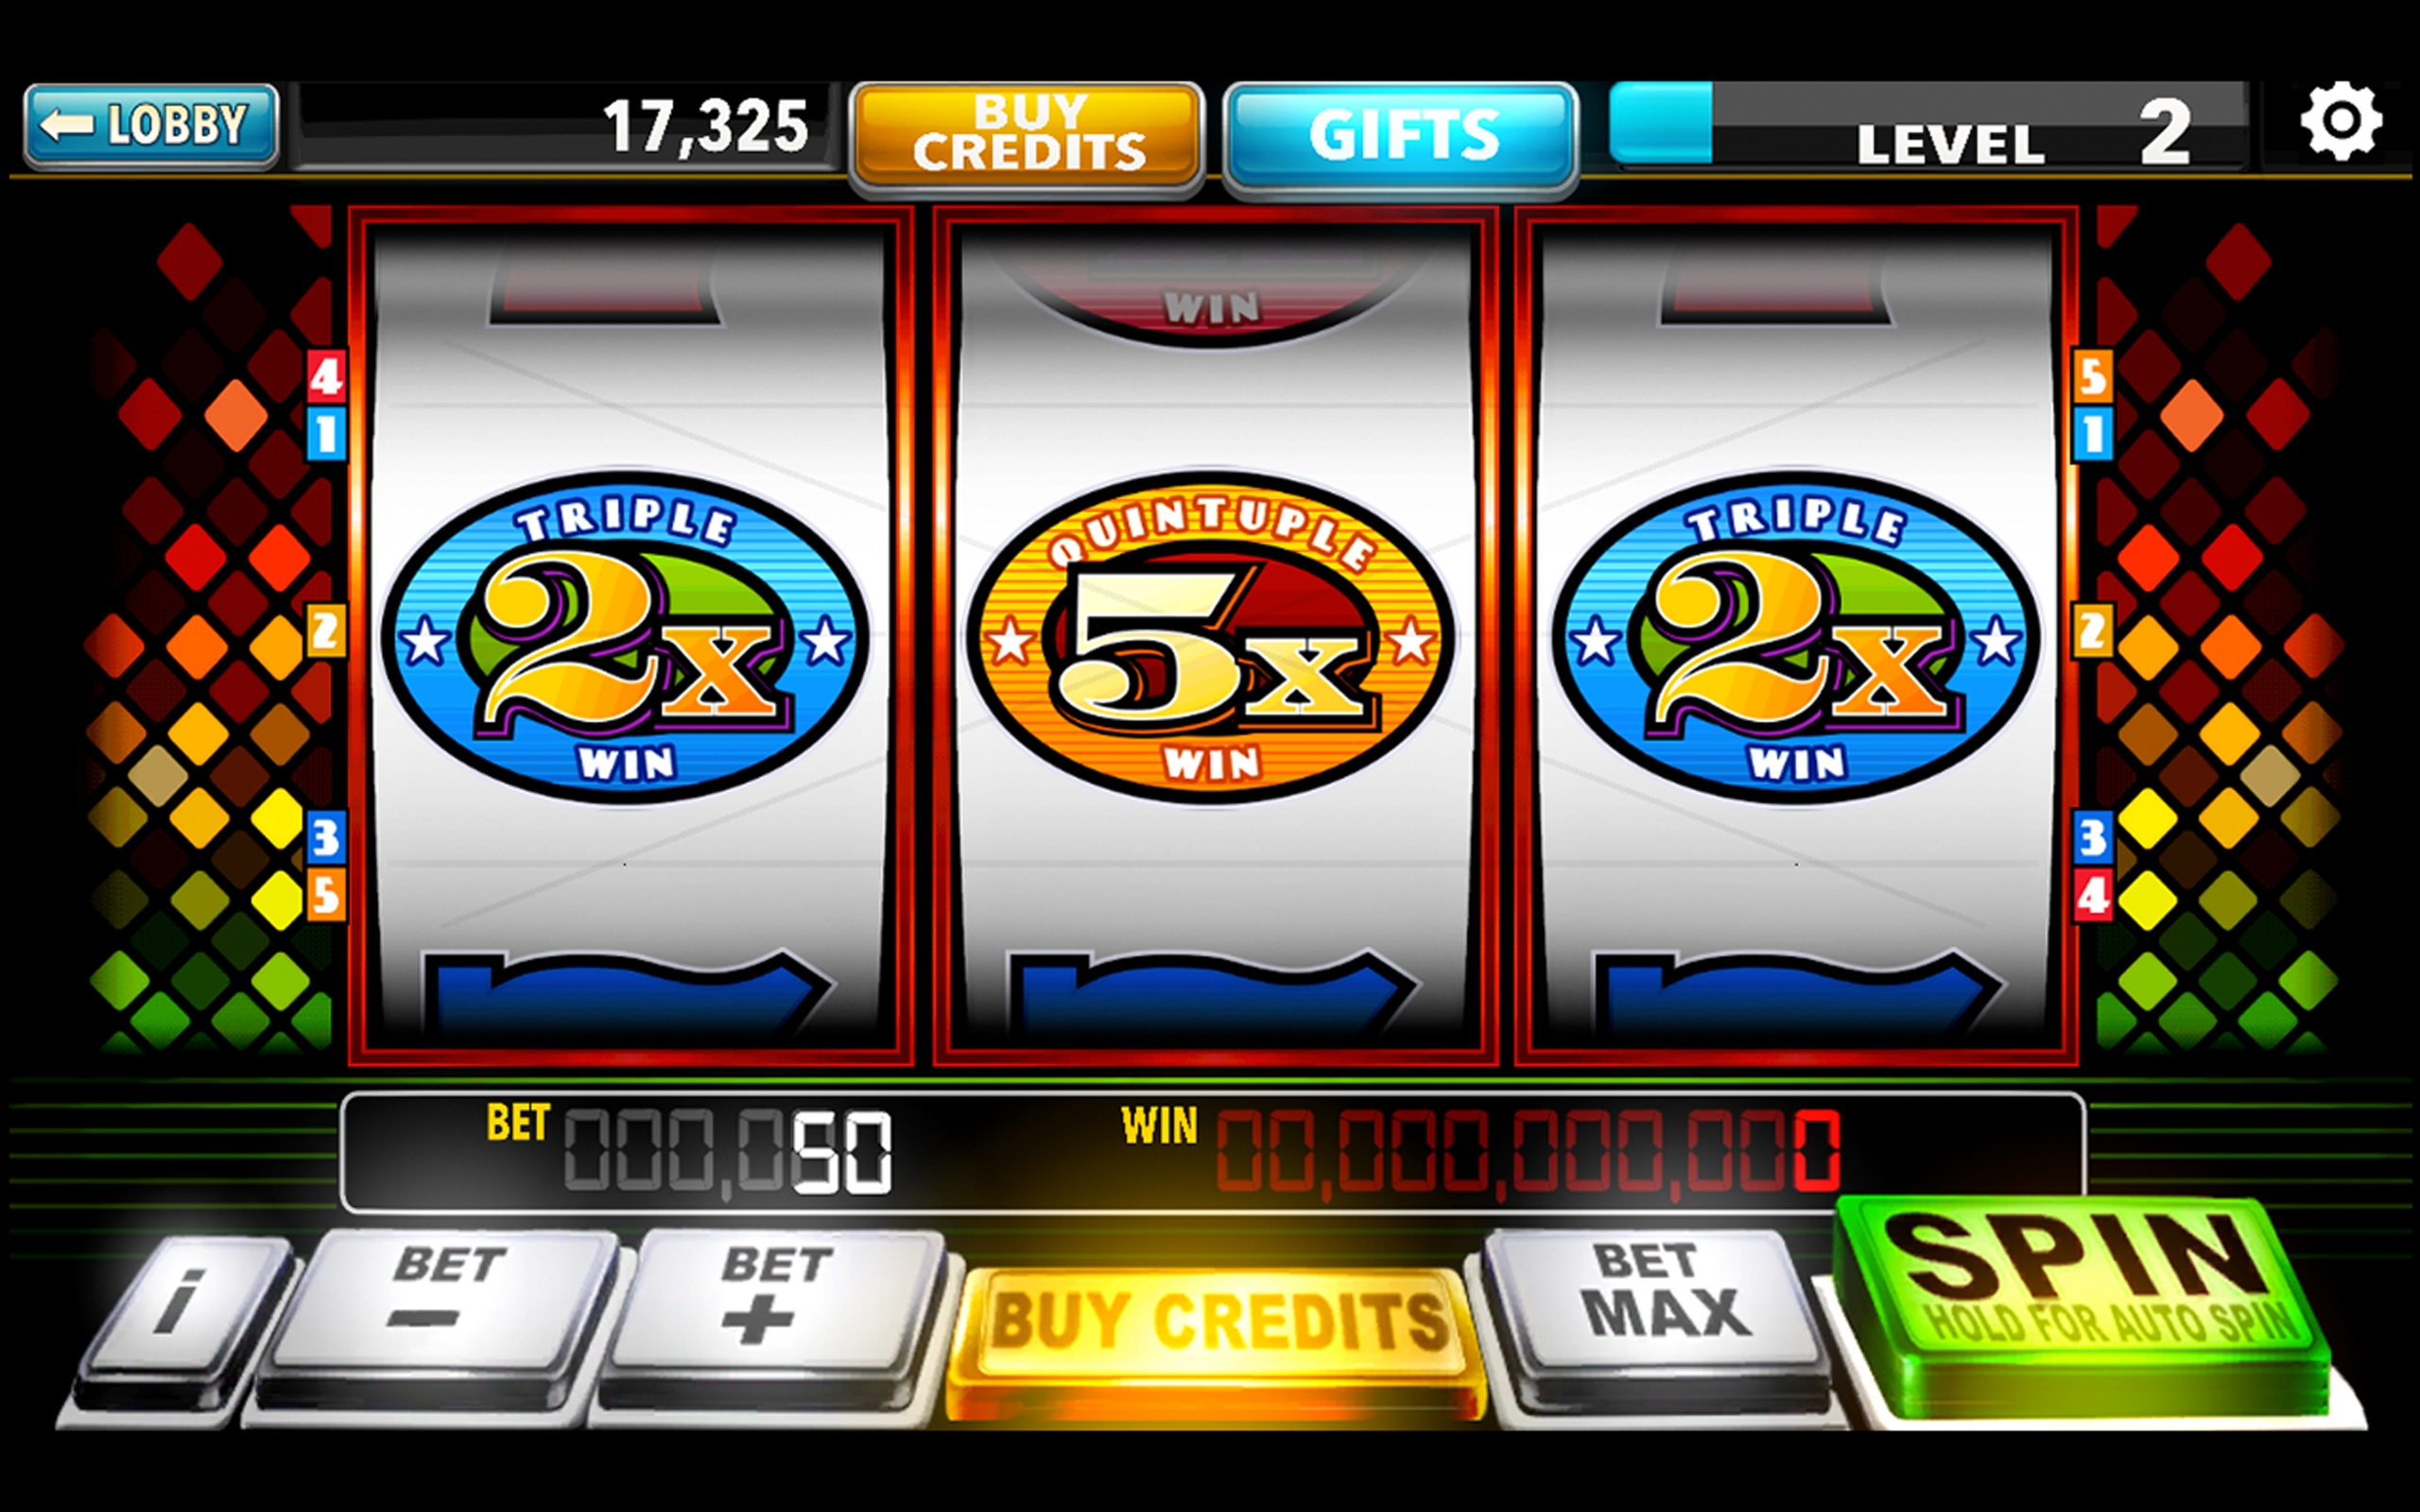 play casino slots gambler game